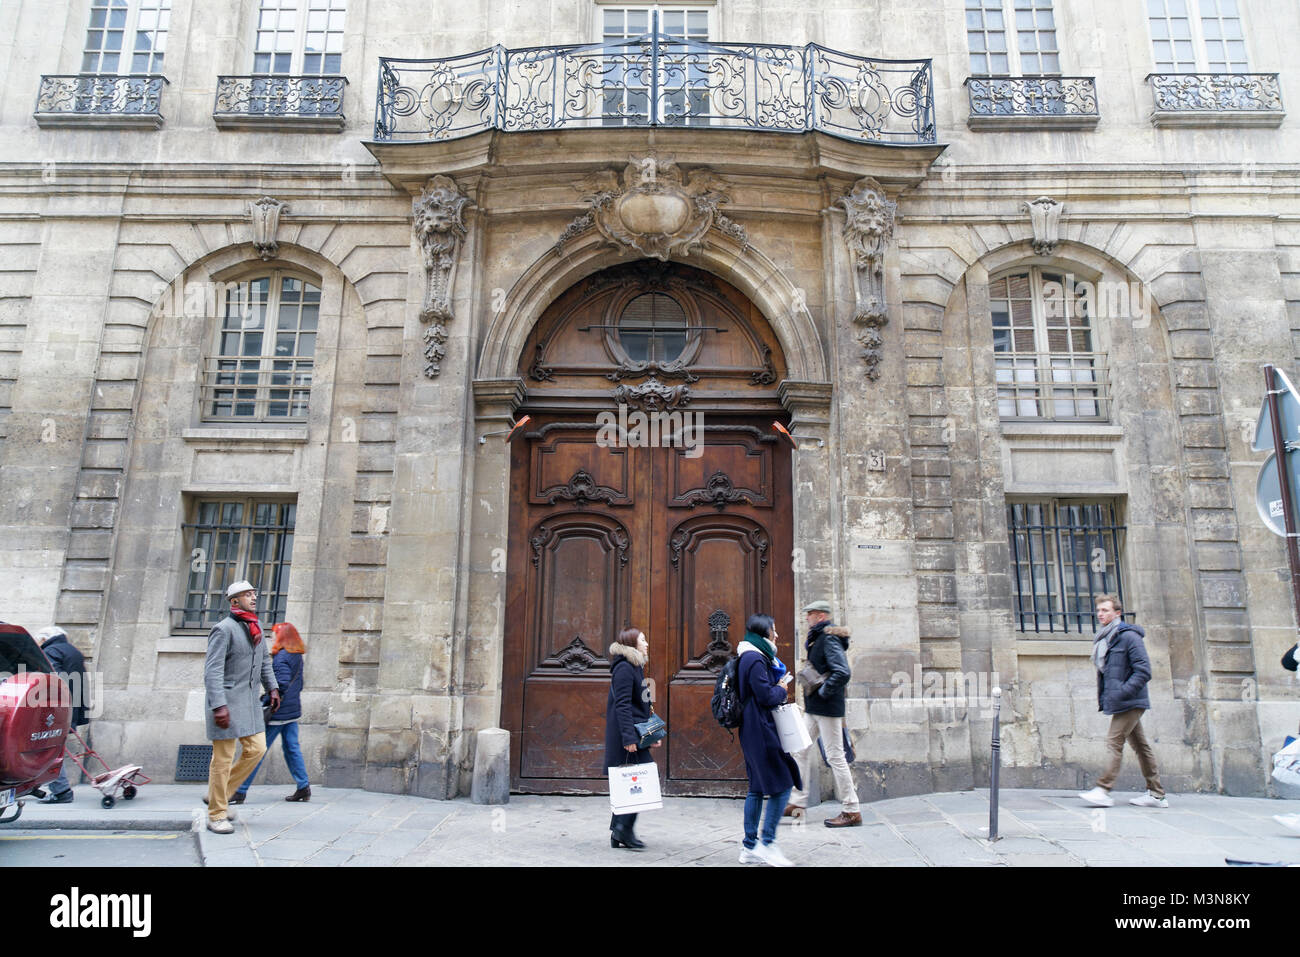 L'Hotel d'Albret al 31, rue des Francs Bourgeois nel quartiere Marais di Parigi. Essa è stata inizialmente eretto nel XVI secolo con aggiunte successivamente. Foto Stock